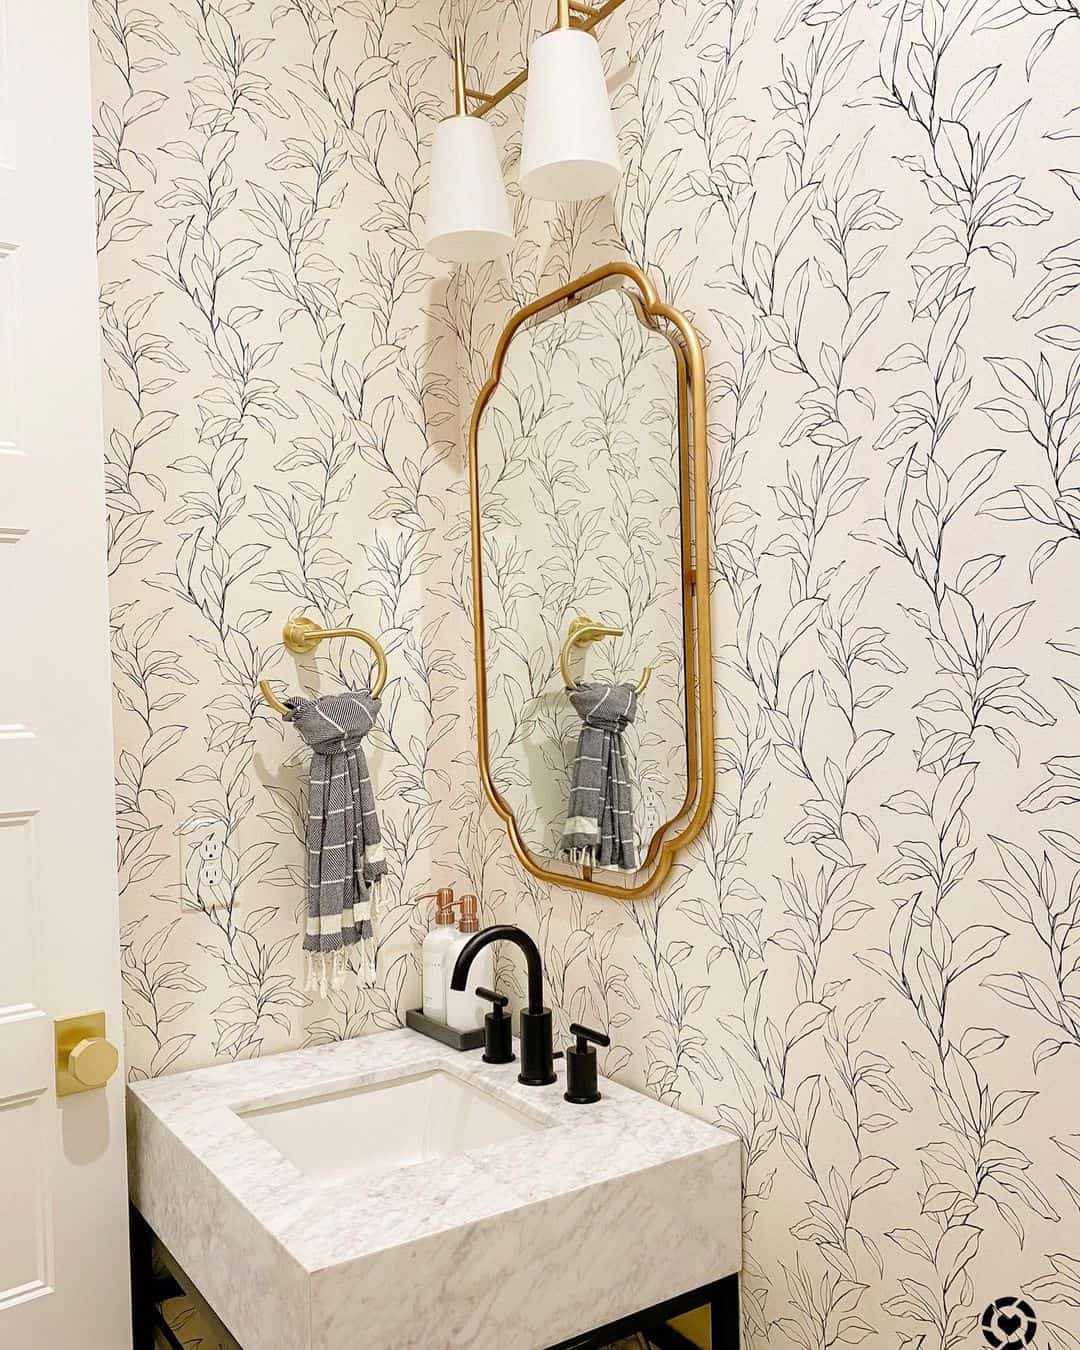 Share 124+ bathroom wallpaper ideas best - 3tdesign.edu.vn